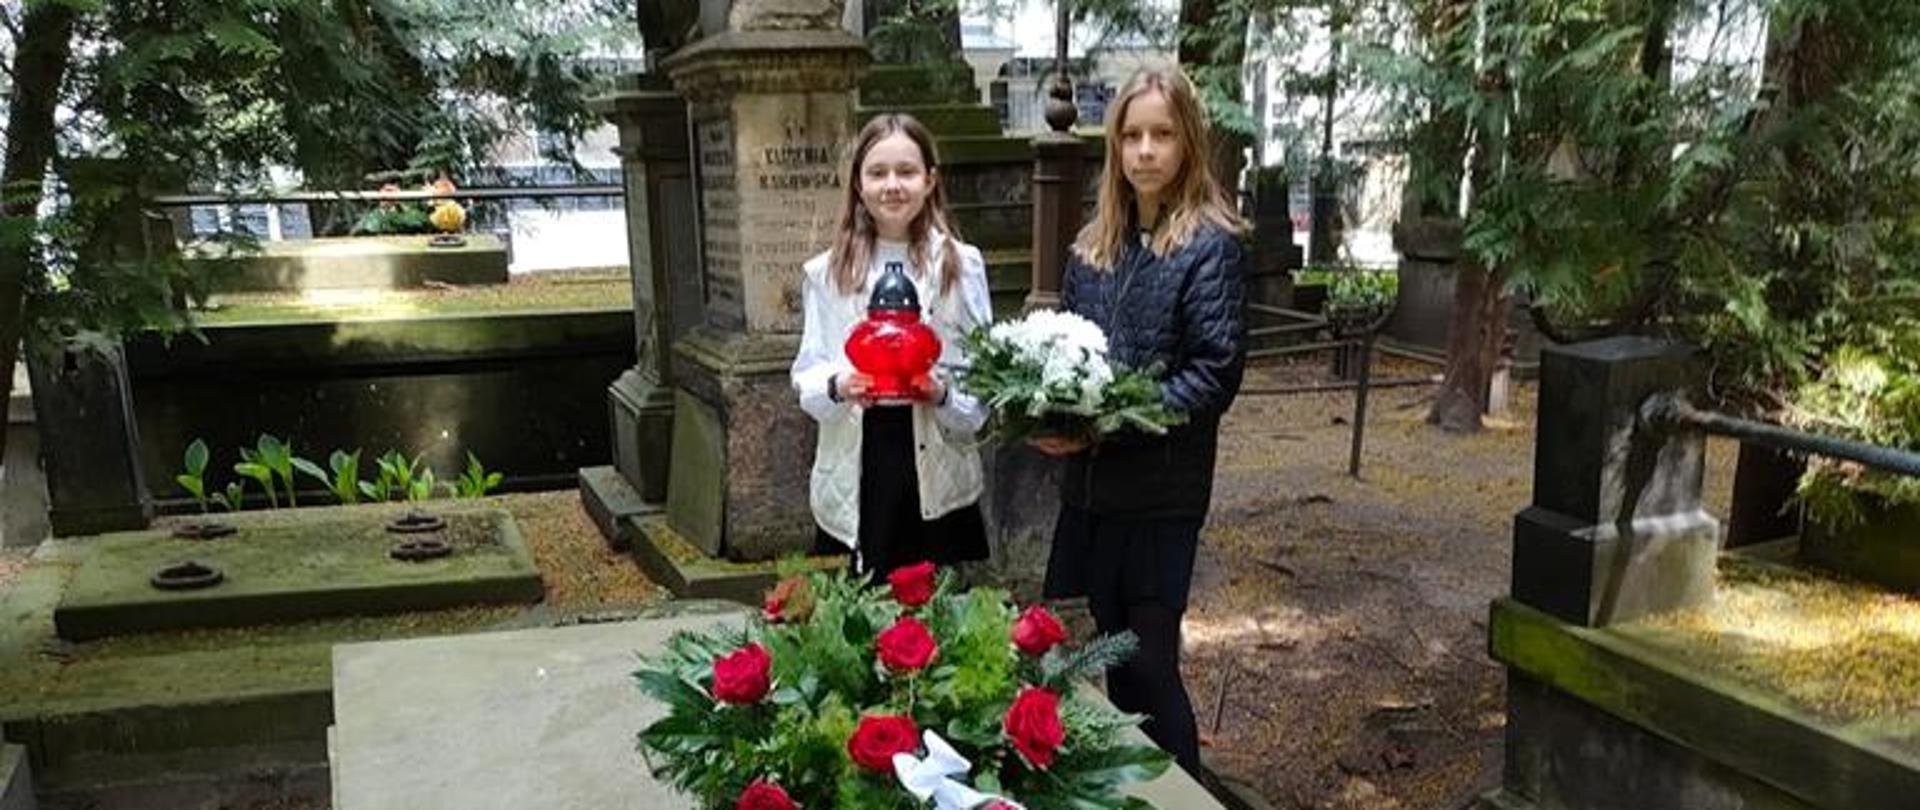 Na środku zdjęcia widać 2 uczennice składające kwiaty na grobie Stanisława Moniuszki